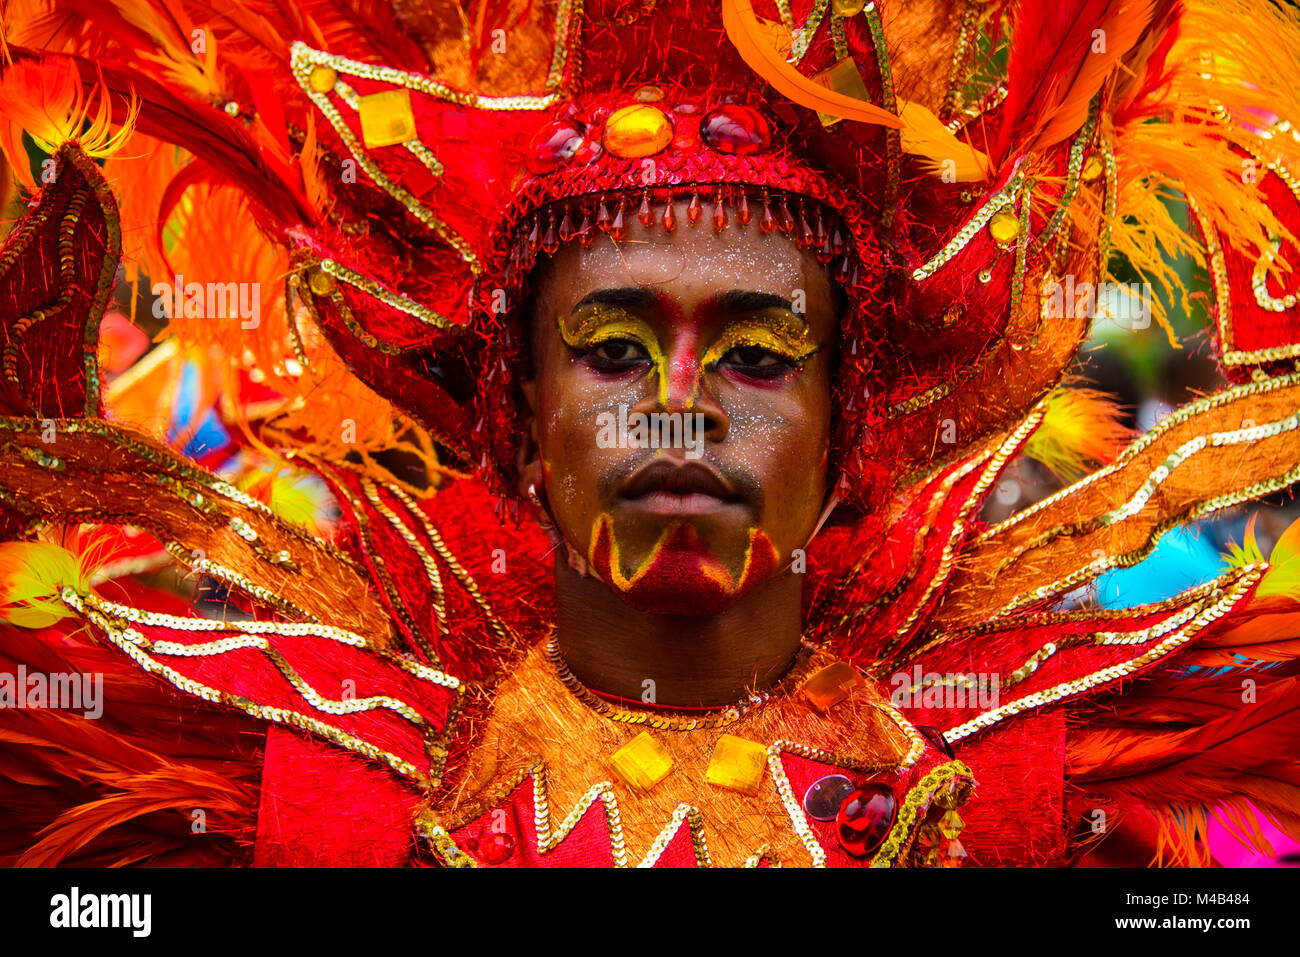 Immagini Stock - Uomo Nativo Defile In Costume Colorato All'evento Annuale  Di Carnevale Tradizionale Dominicano. Image 141310678